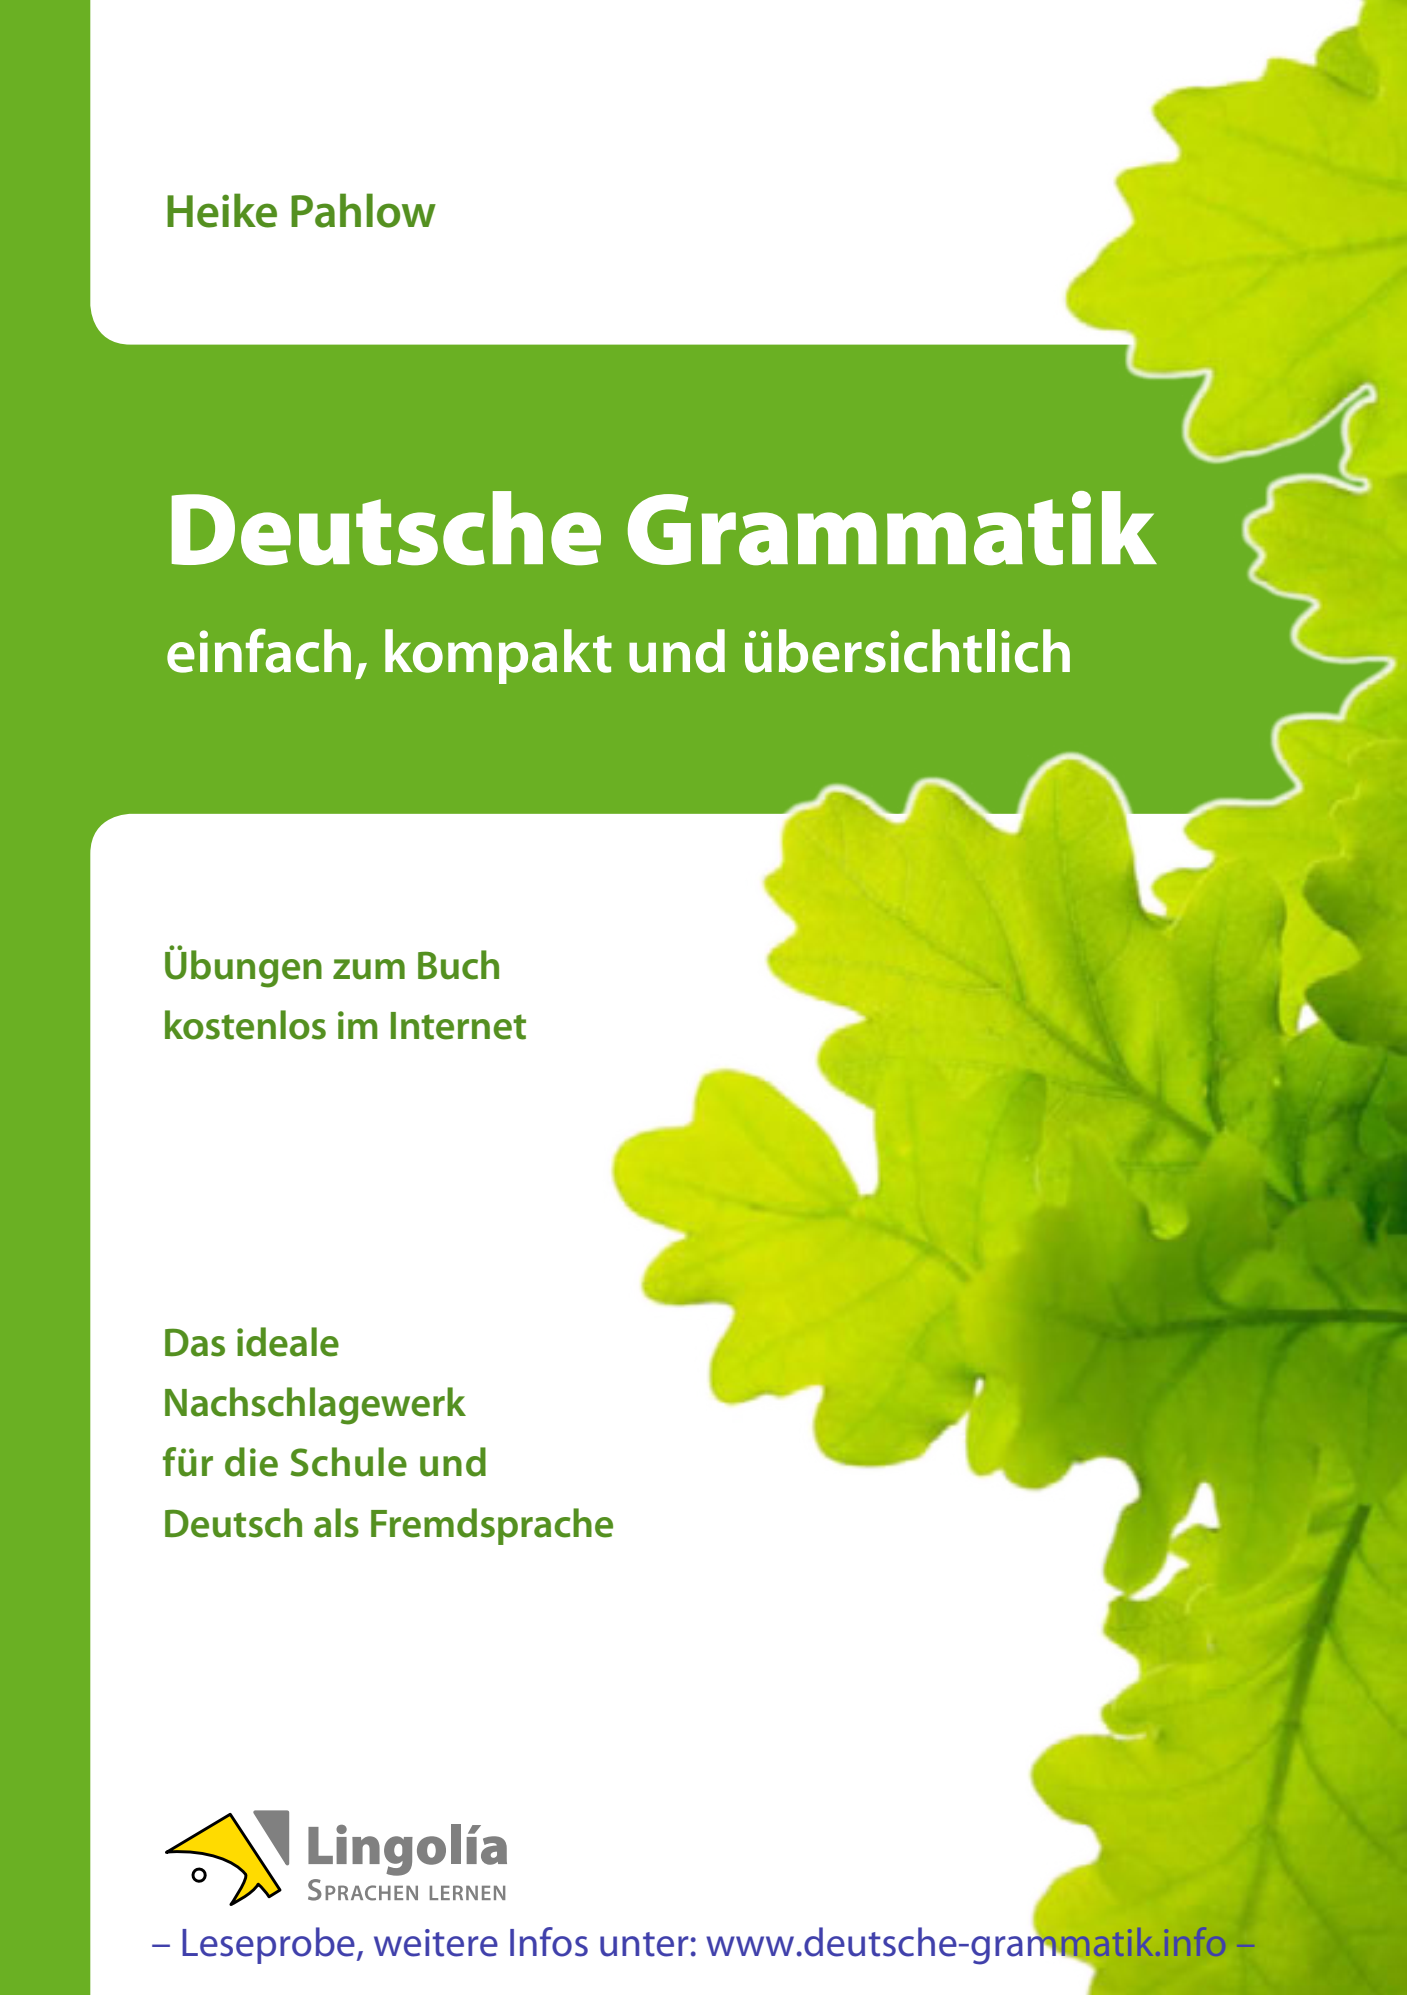 Deutsche grammatik. Grammatik. Deutsch Grammar книга. Учебники по грамматике немецкого. Deutsche Grammatik книга.